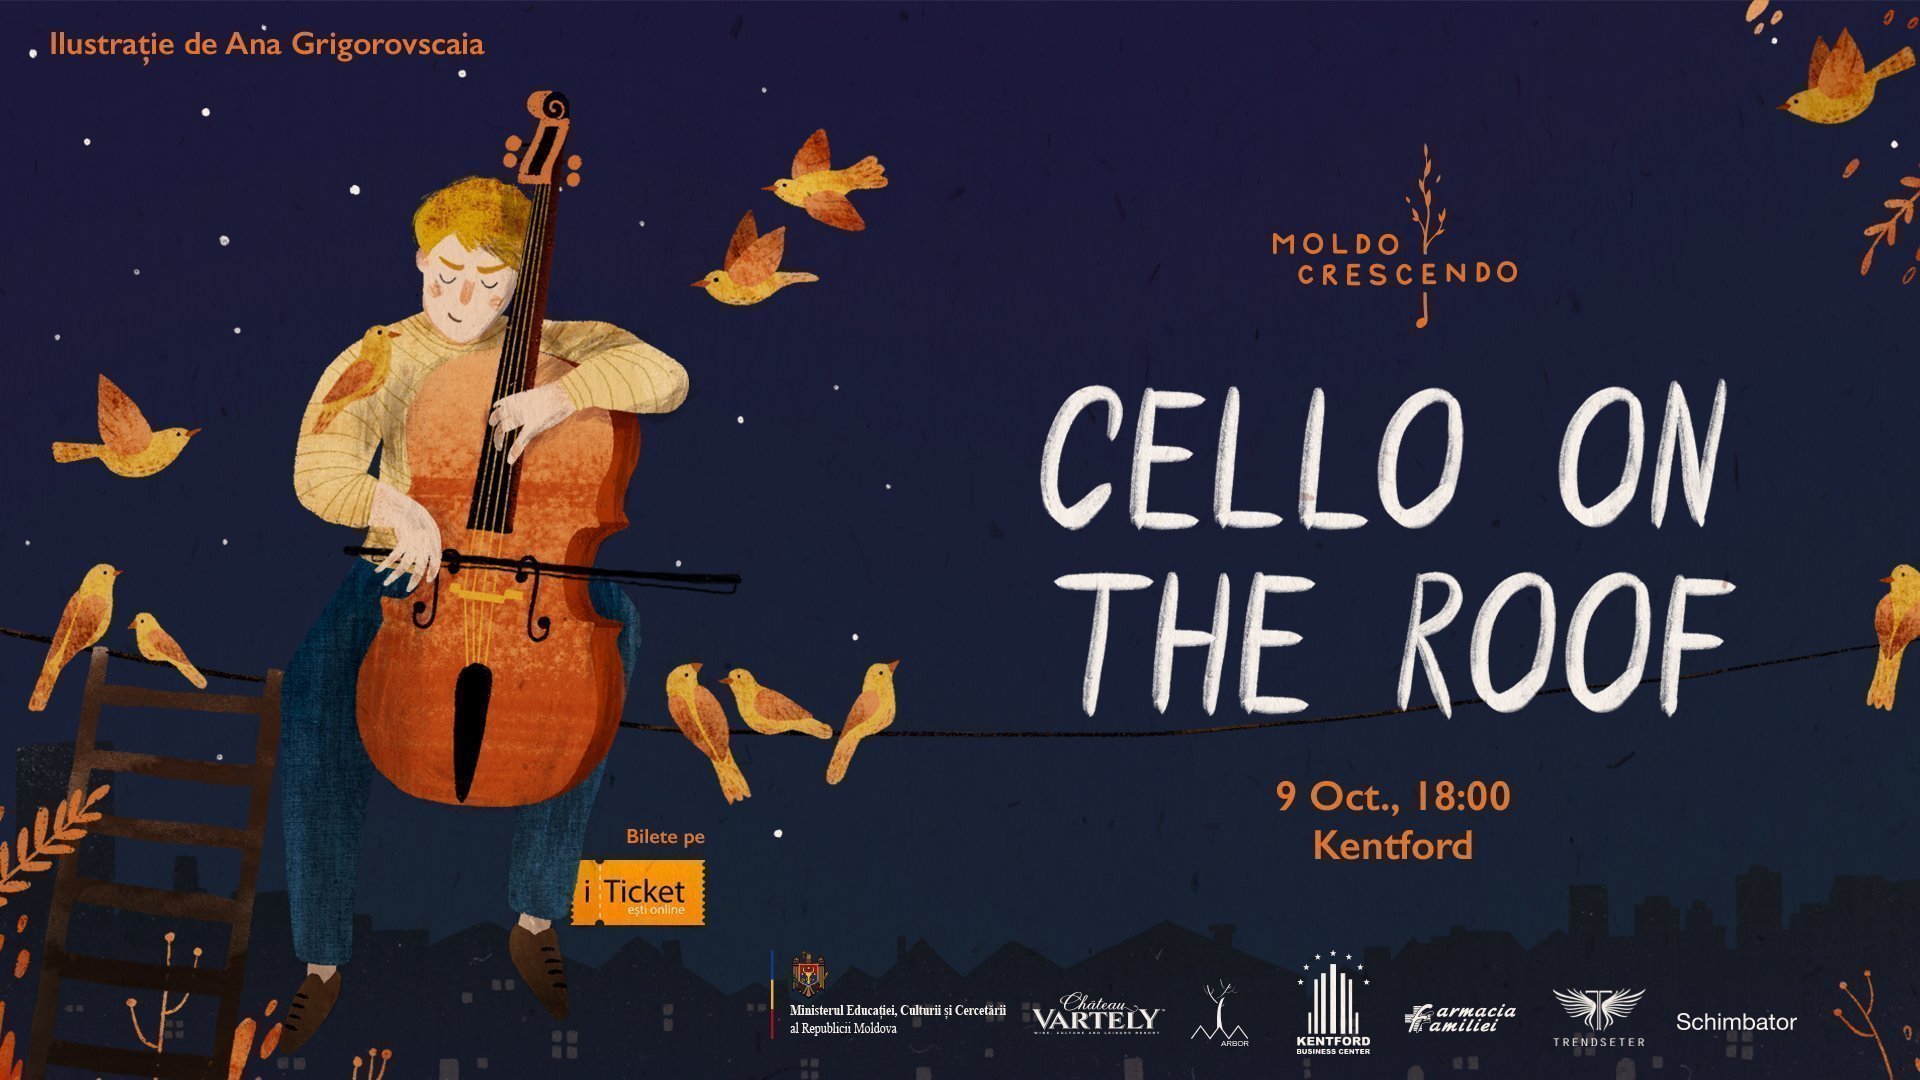 Moldo Crescendo - Cello on the roof